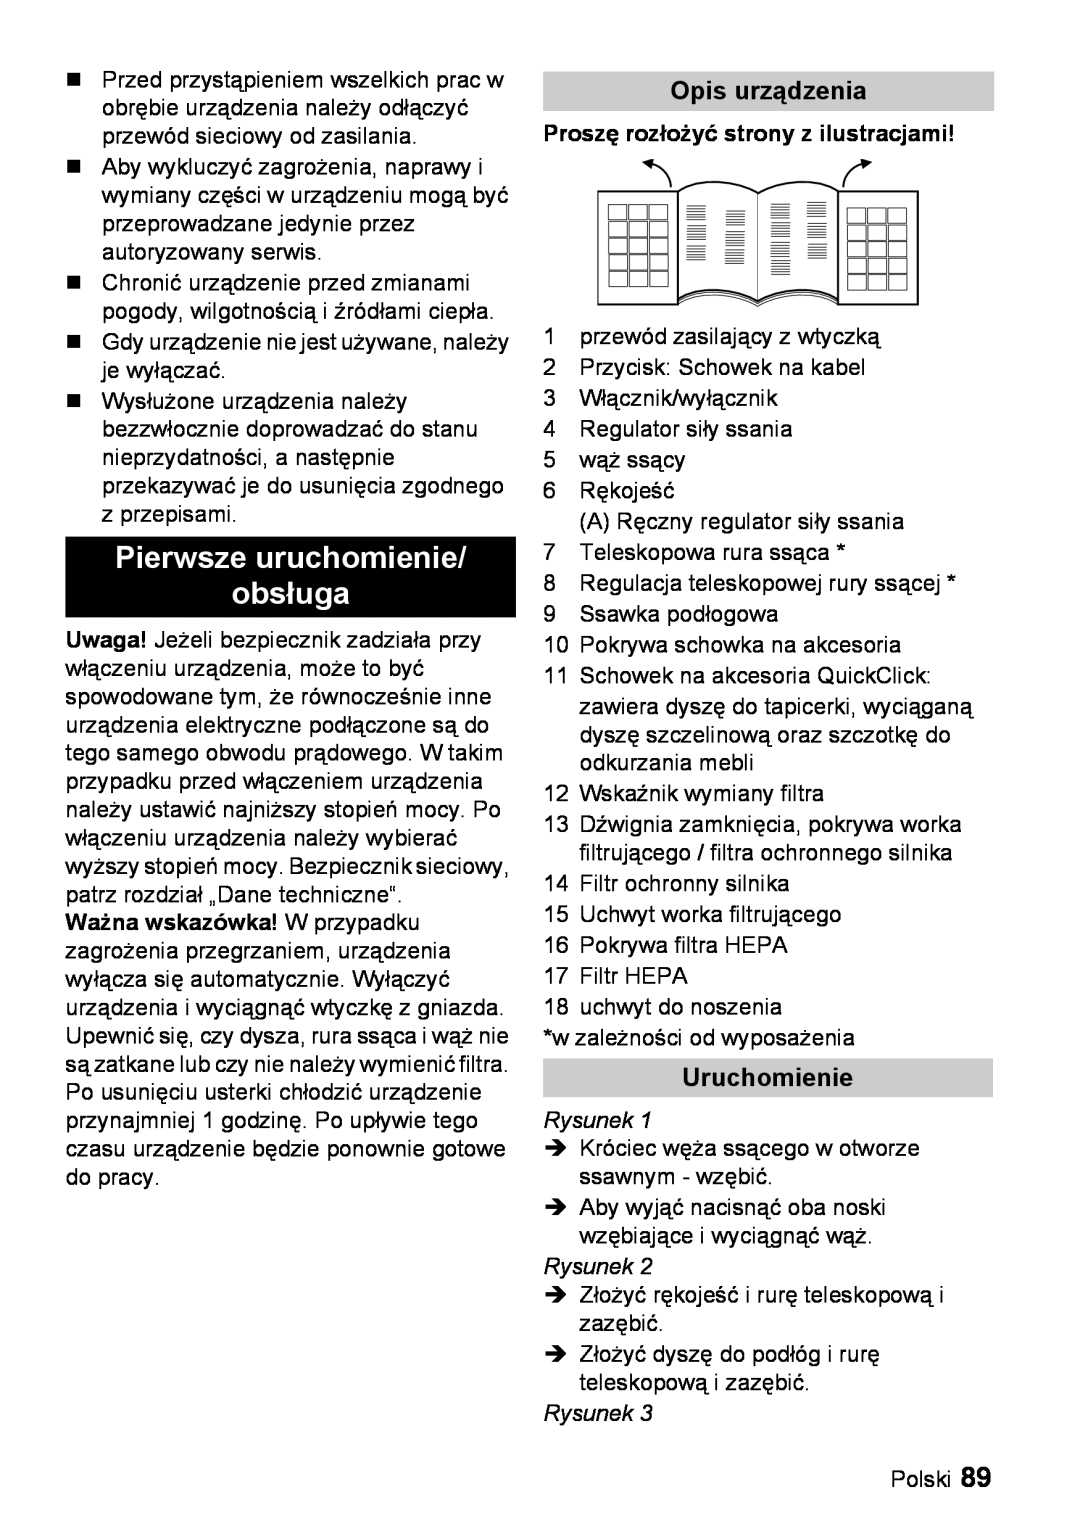 Karcher VC 6200 manual Pierwsze uruchomienie obsługa, Opis urządzenia, Uruchomienie, Proszę rozłożyć strony z ilustracjami 